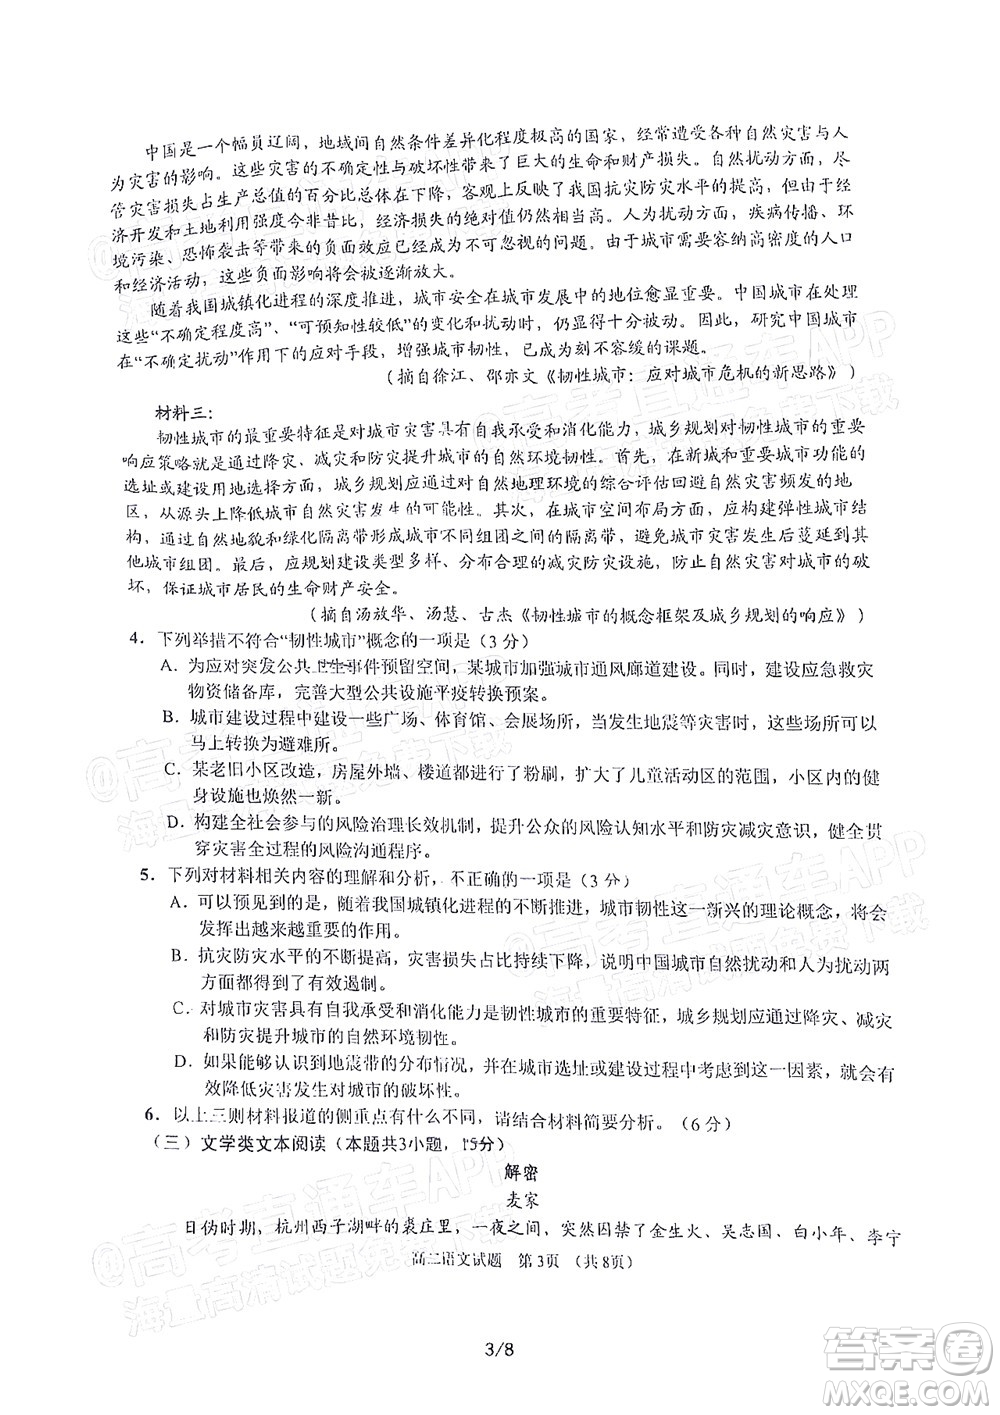 广安市2022年春季高2020级零诊考试语文试题及答案